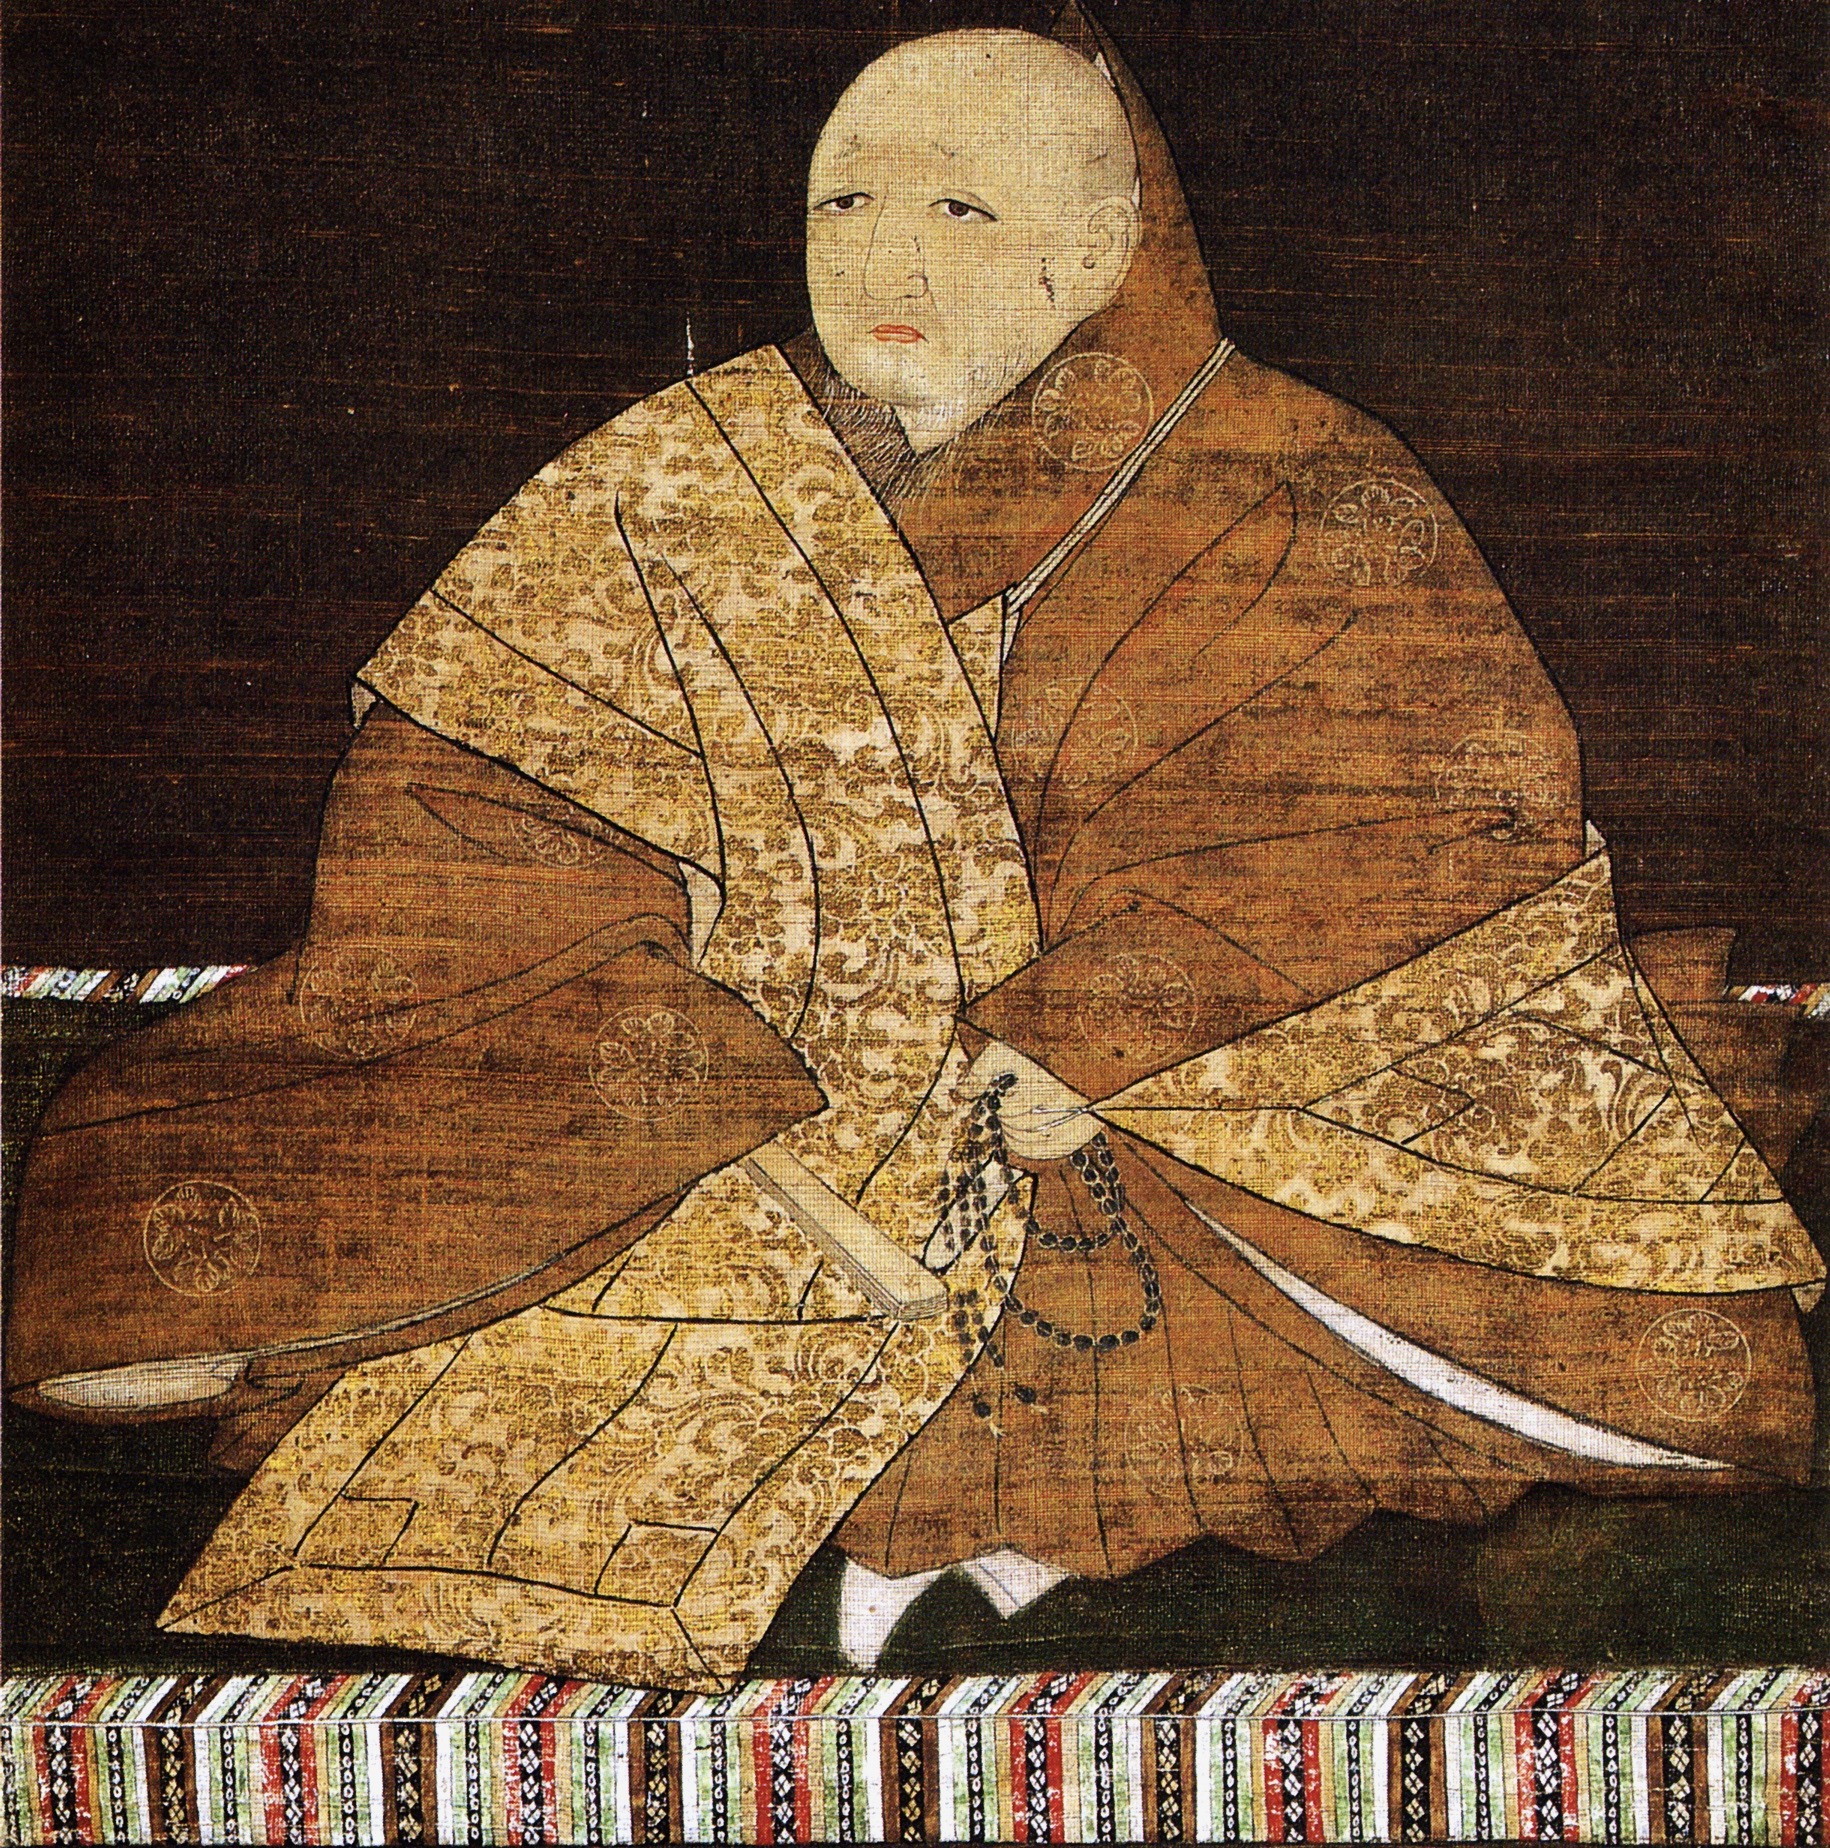 Ashikaga Yoshimitsu: Historien om den pragmatiske shogun og kejseren af Kina / Portræt